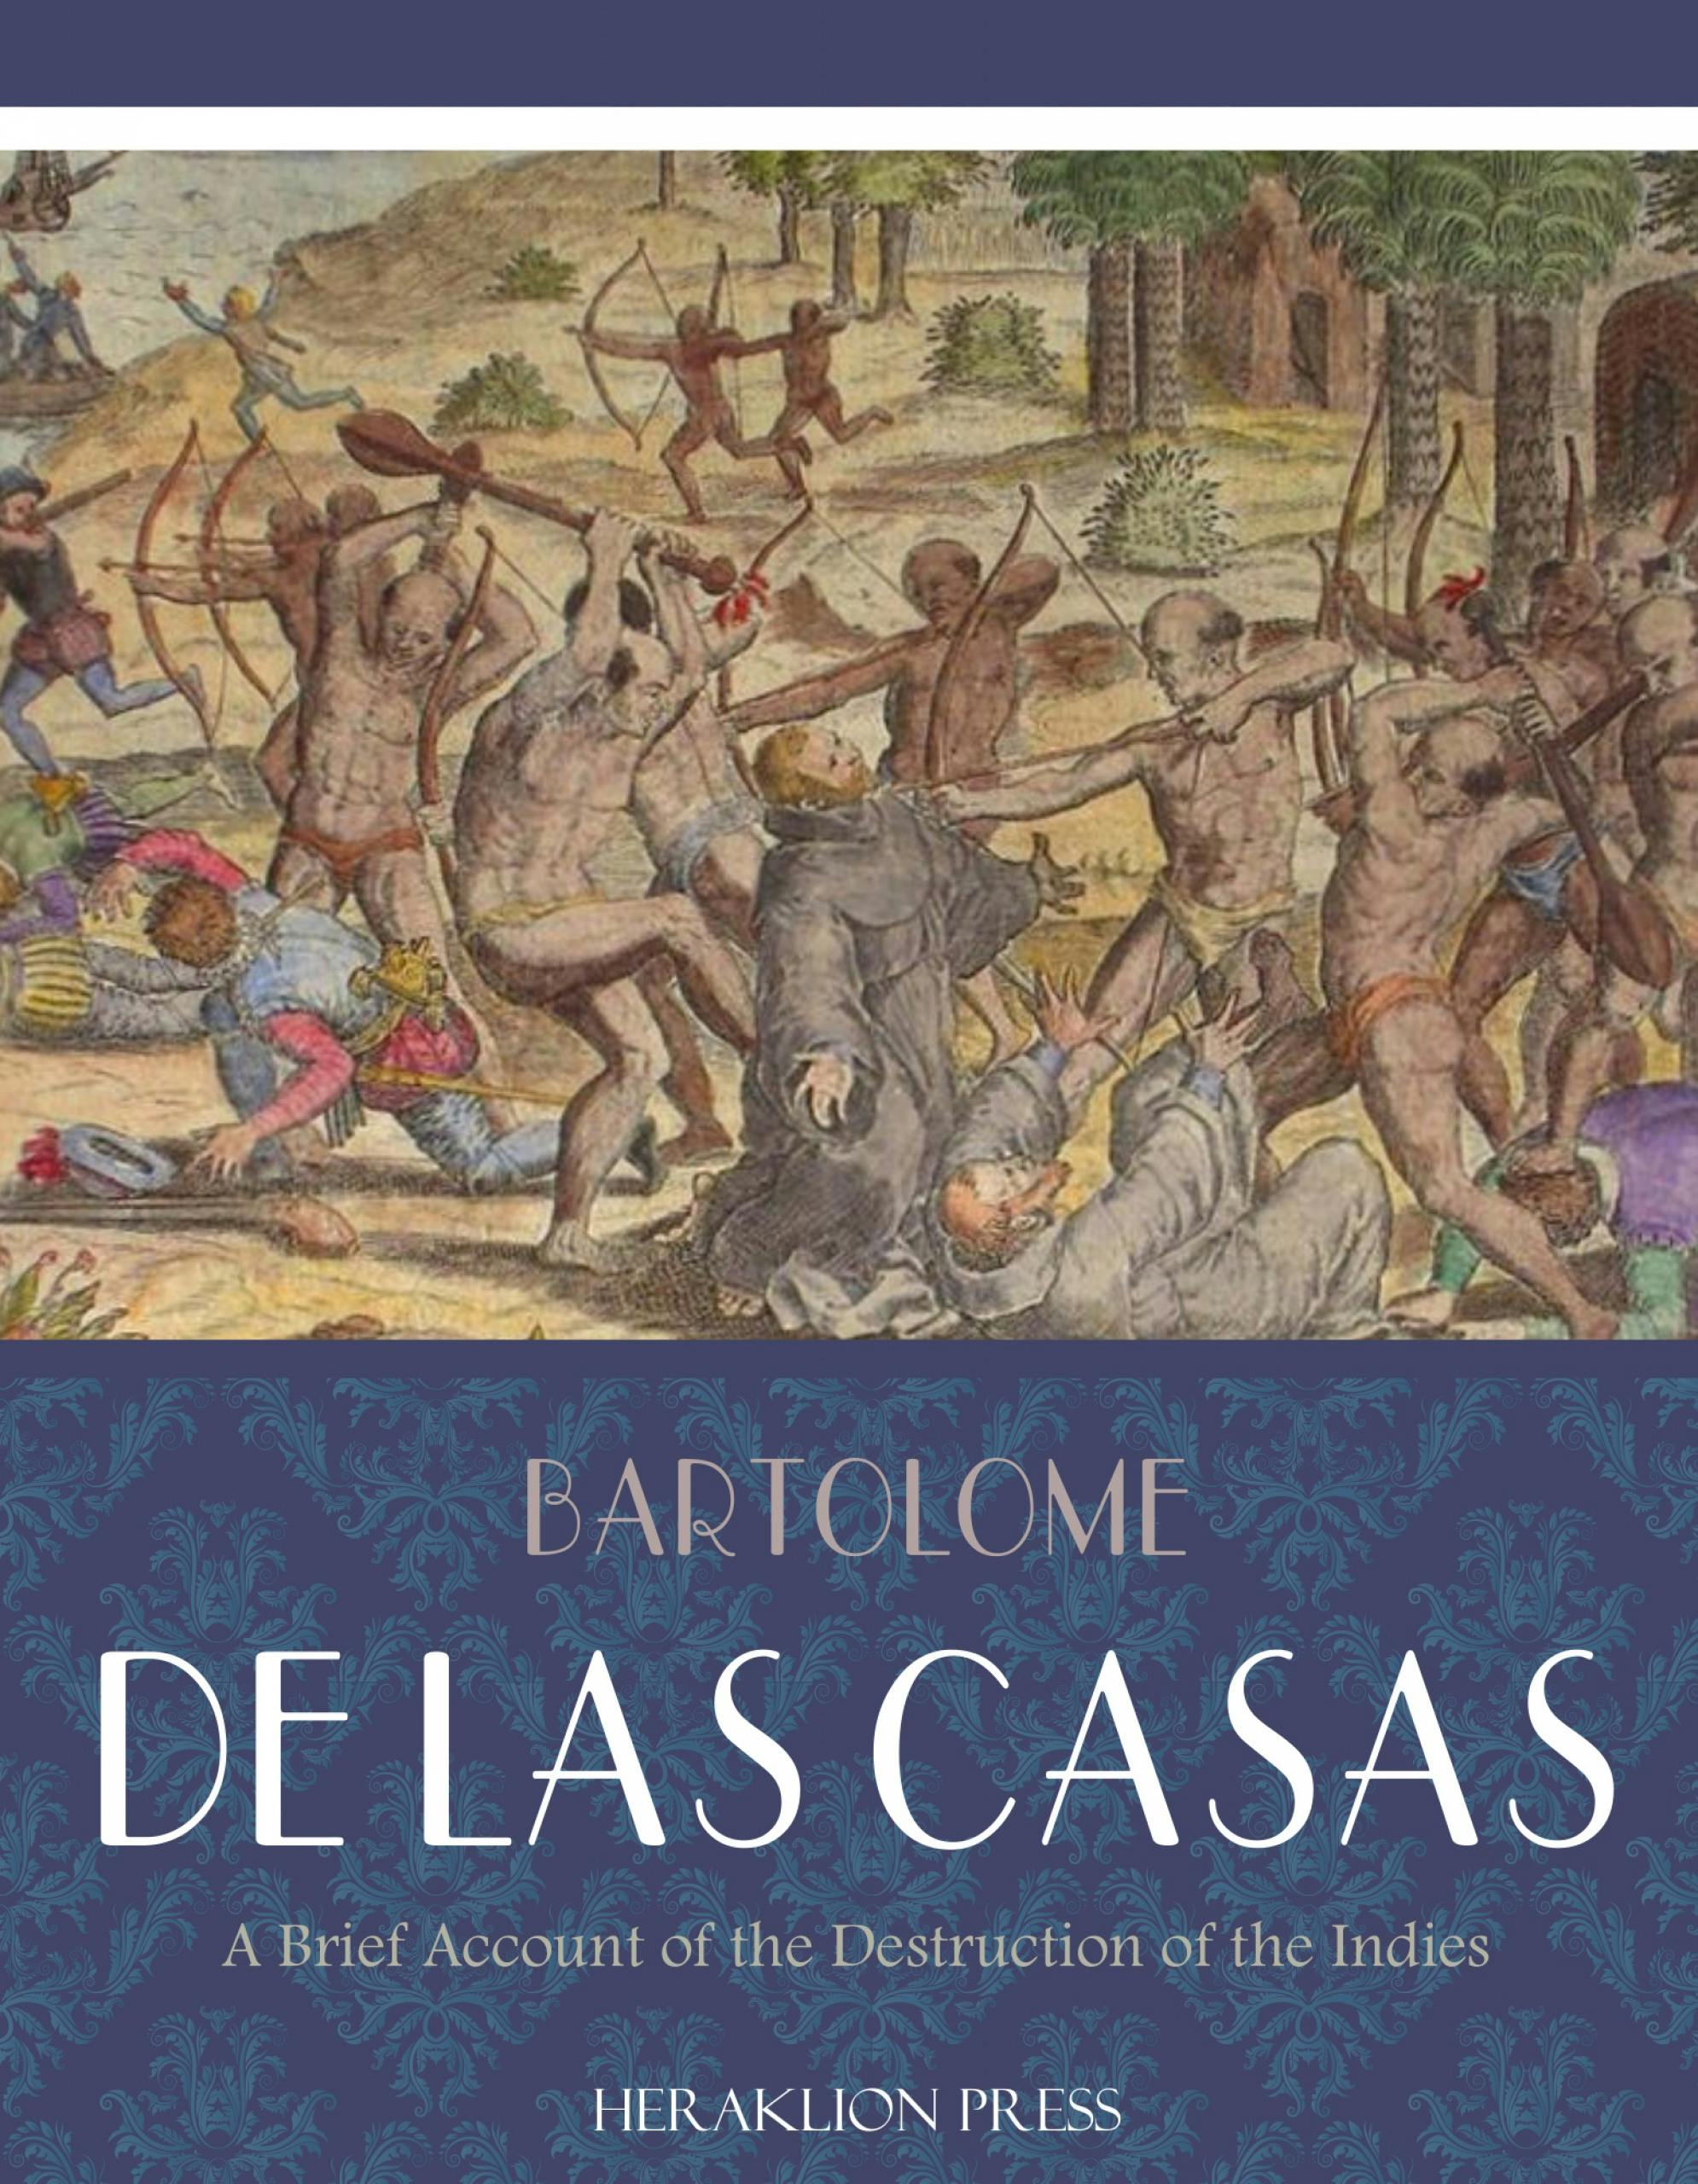 A Brief Account of the Destruction of the Indies - Bartolome de las Casas